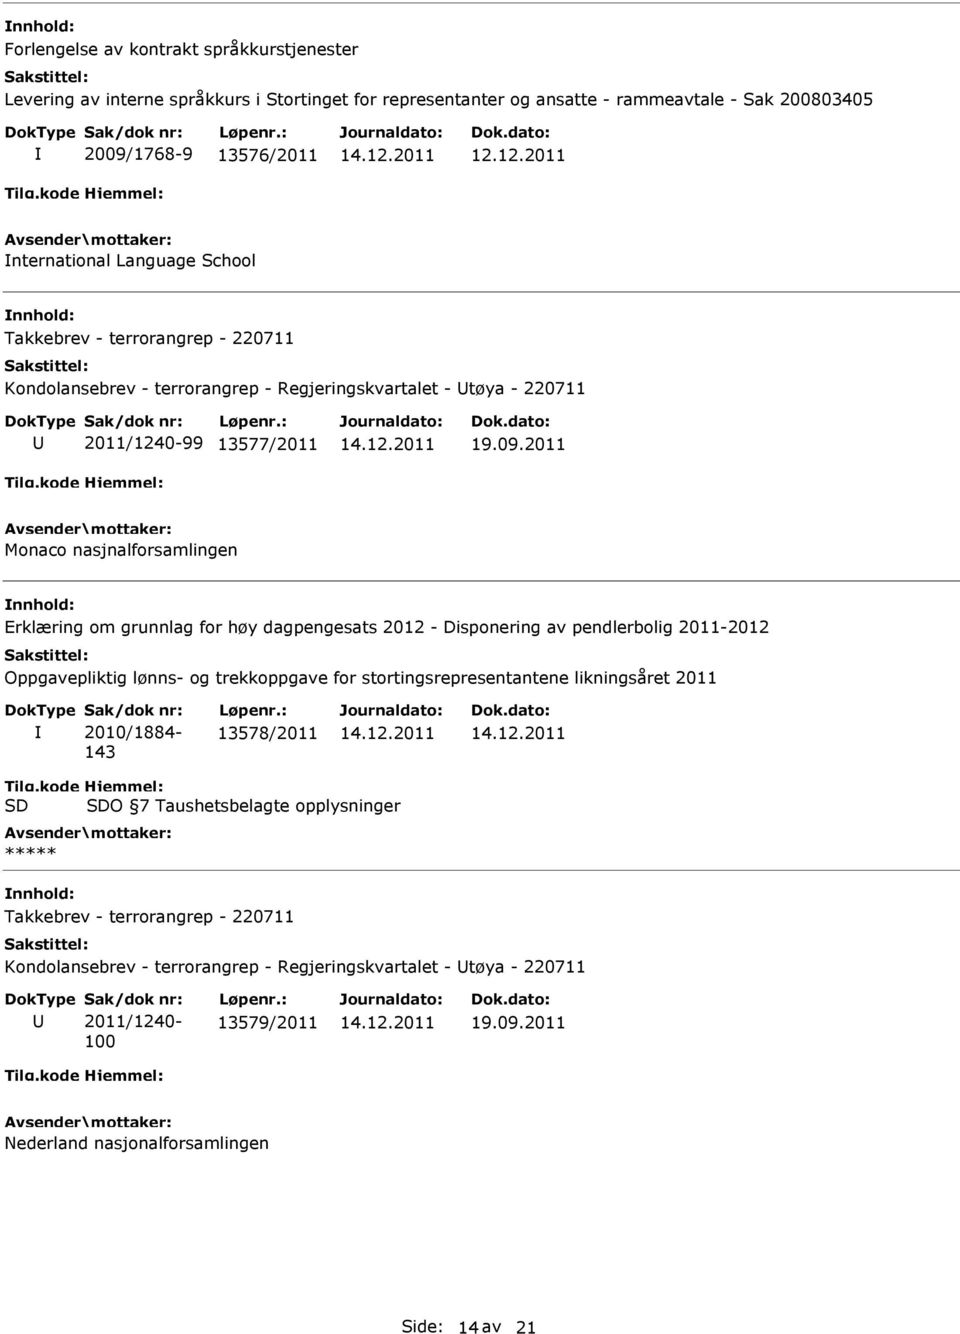 dagpengesats 2012 - Disponering av pendlerbolig 2011-2012 Oppgavepliktig lønns- og trekkoppgave for stortingsrepresentantene likningsåret 2011 2010/1884-143 13578/2011 Tilg.